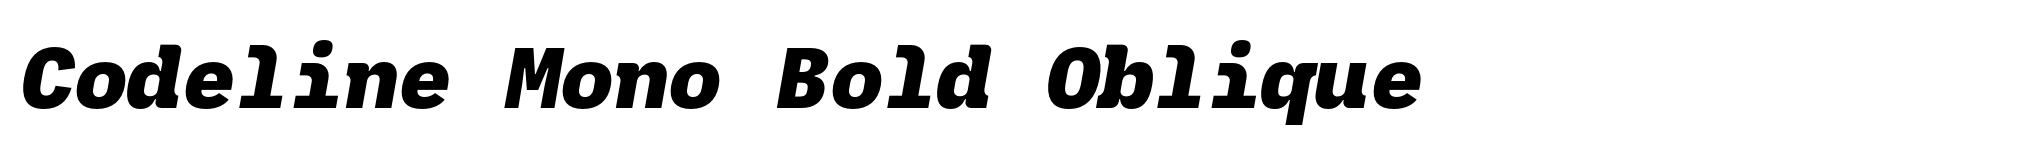 Codeline Mono Bold Oblique image